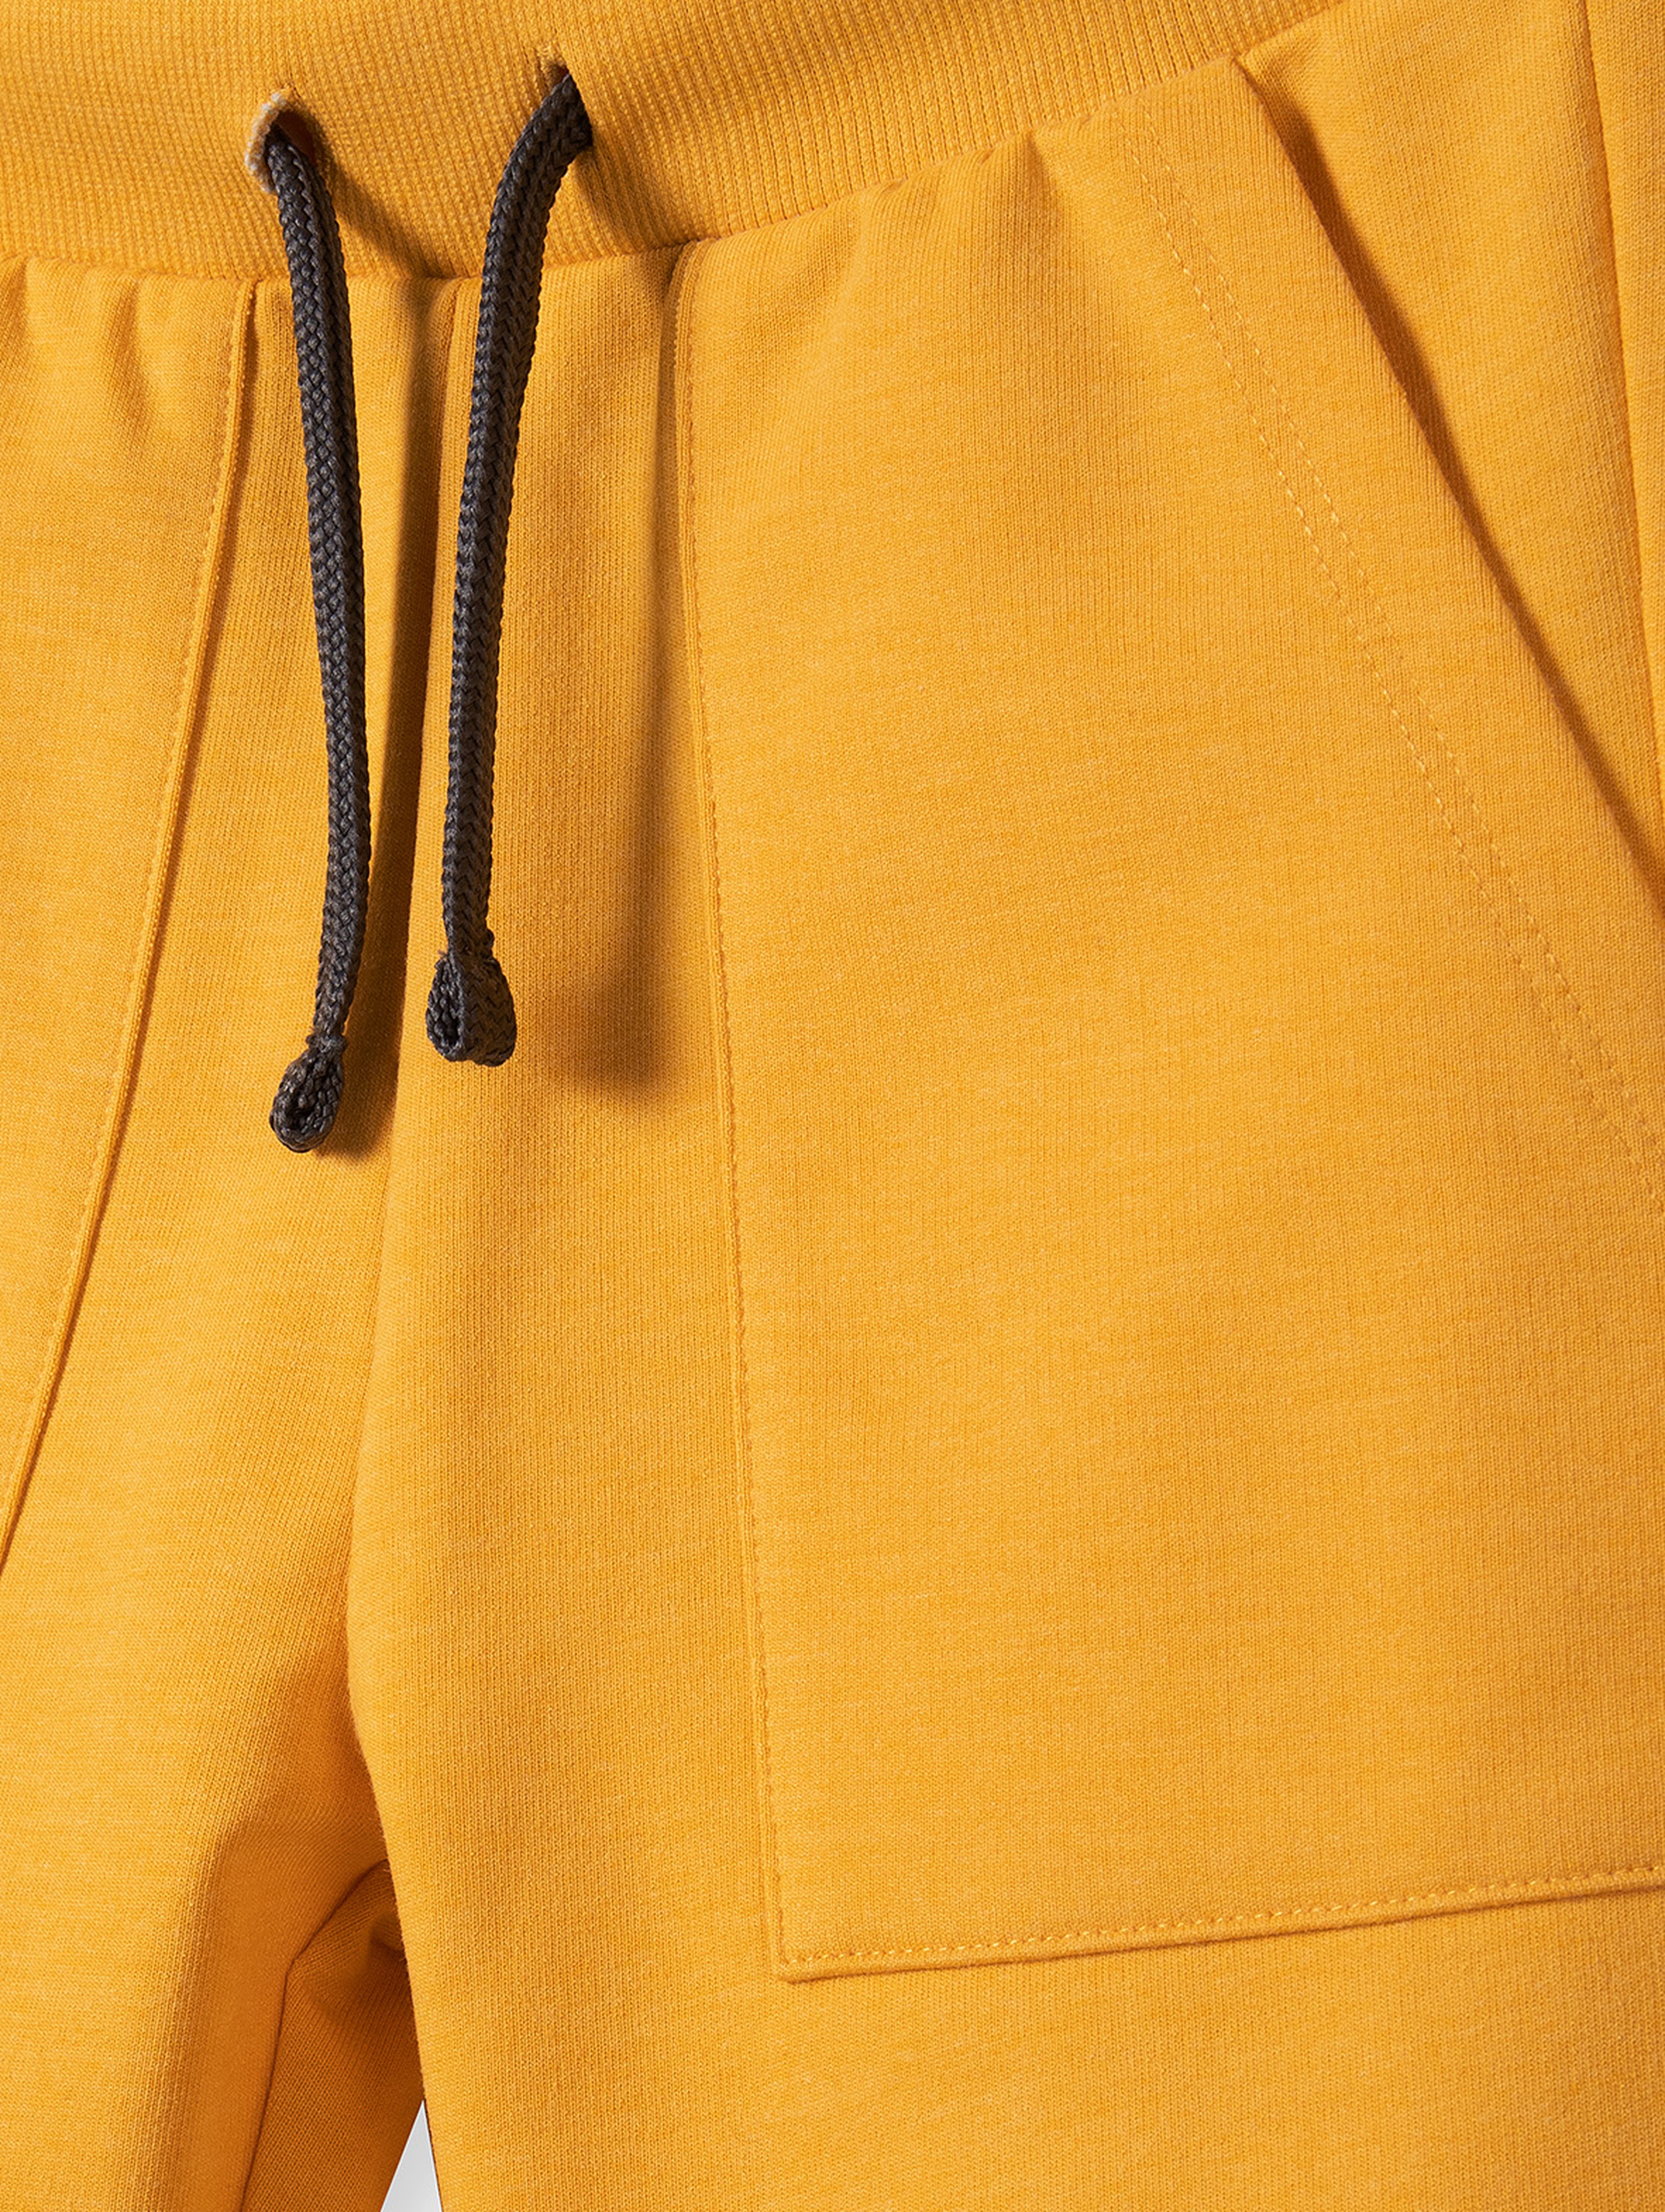 Spodnie dresowe chłopięce bawełniane z kieszeniami - żółte